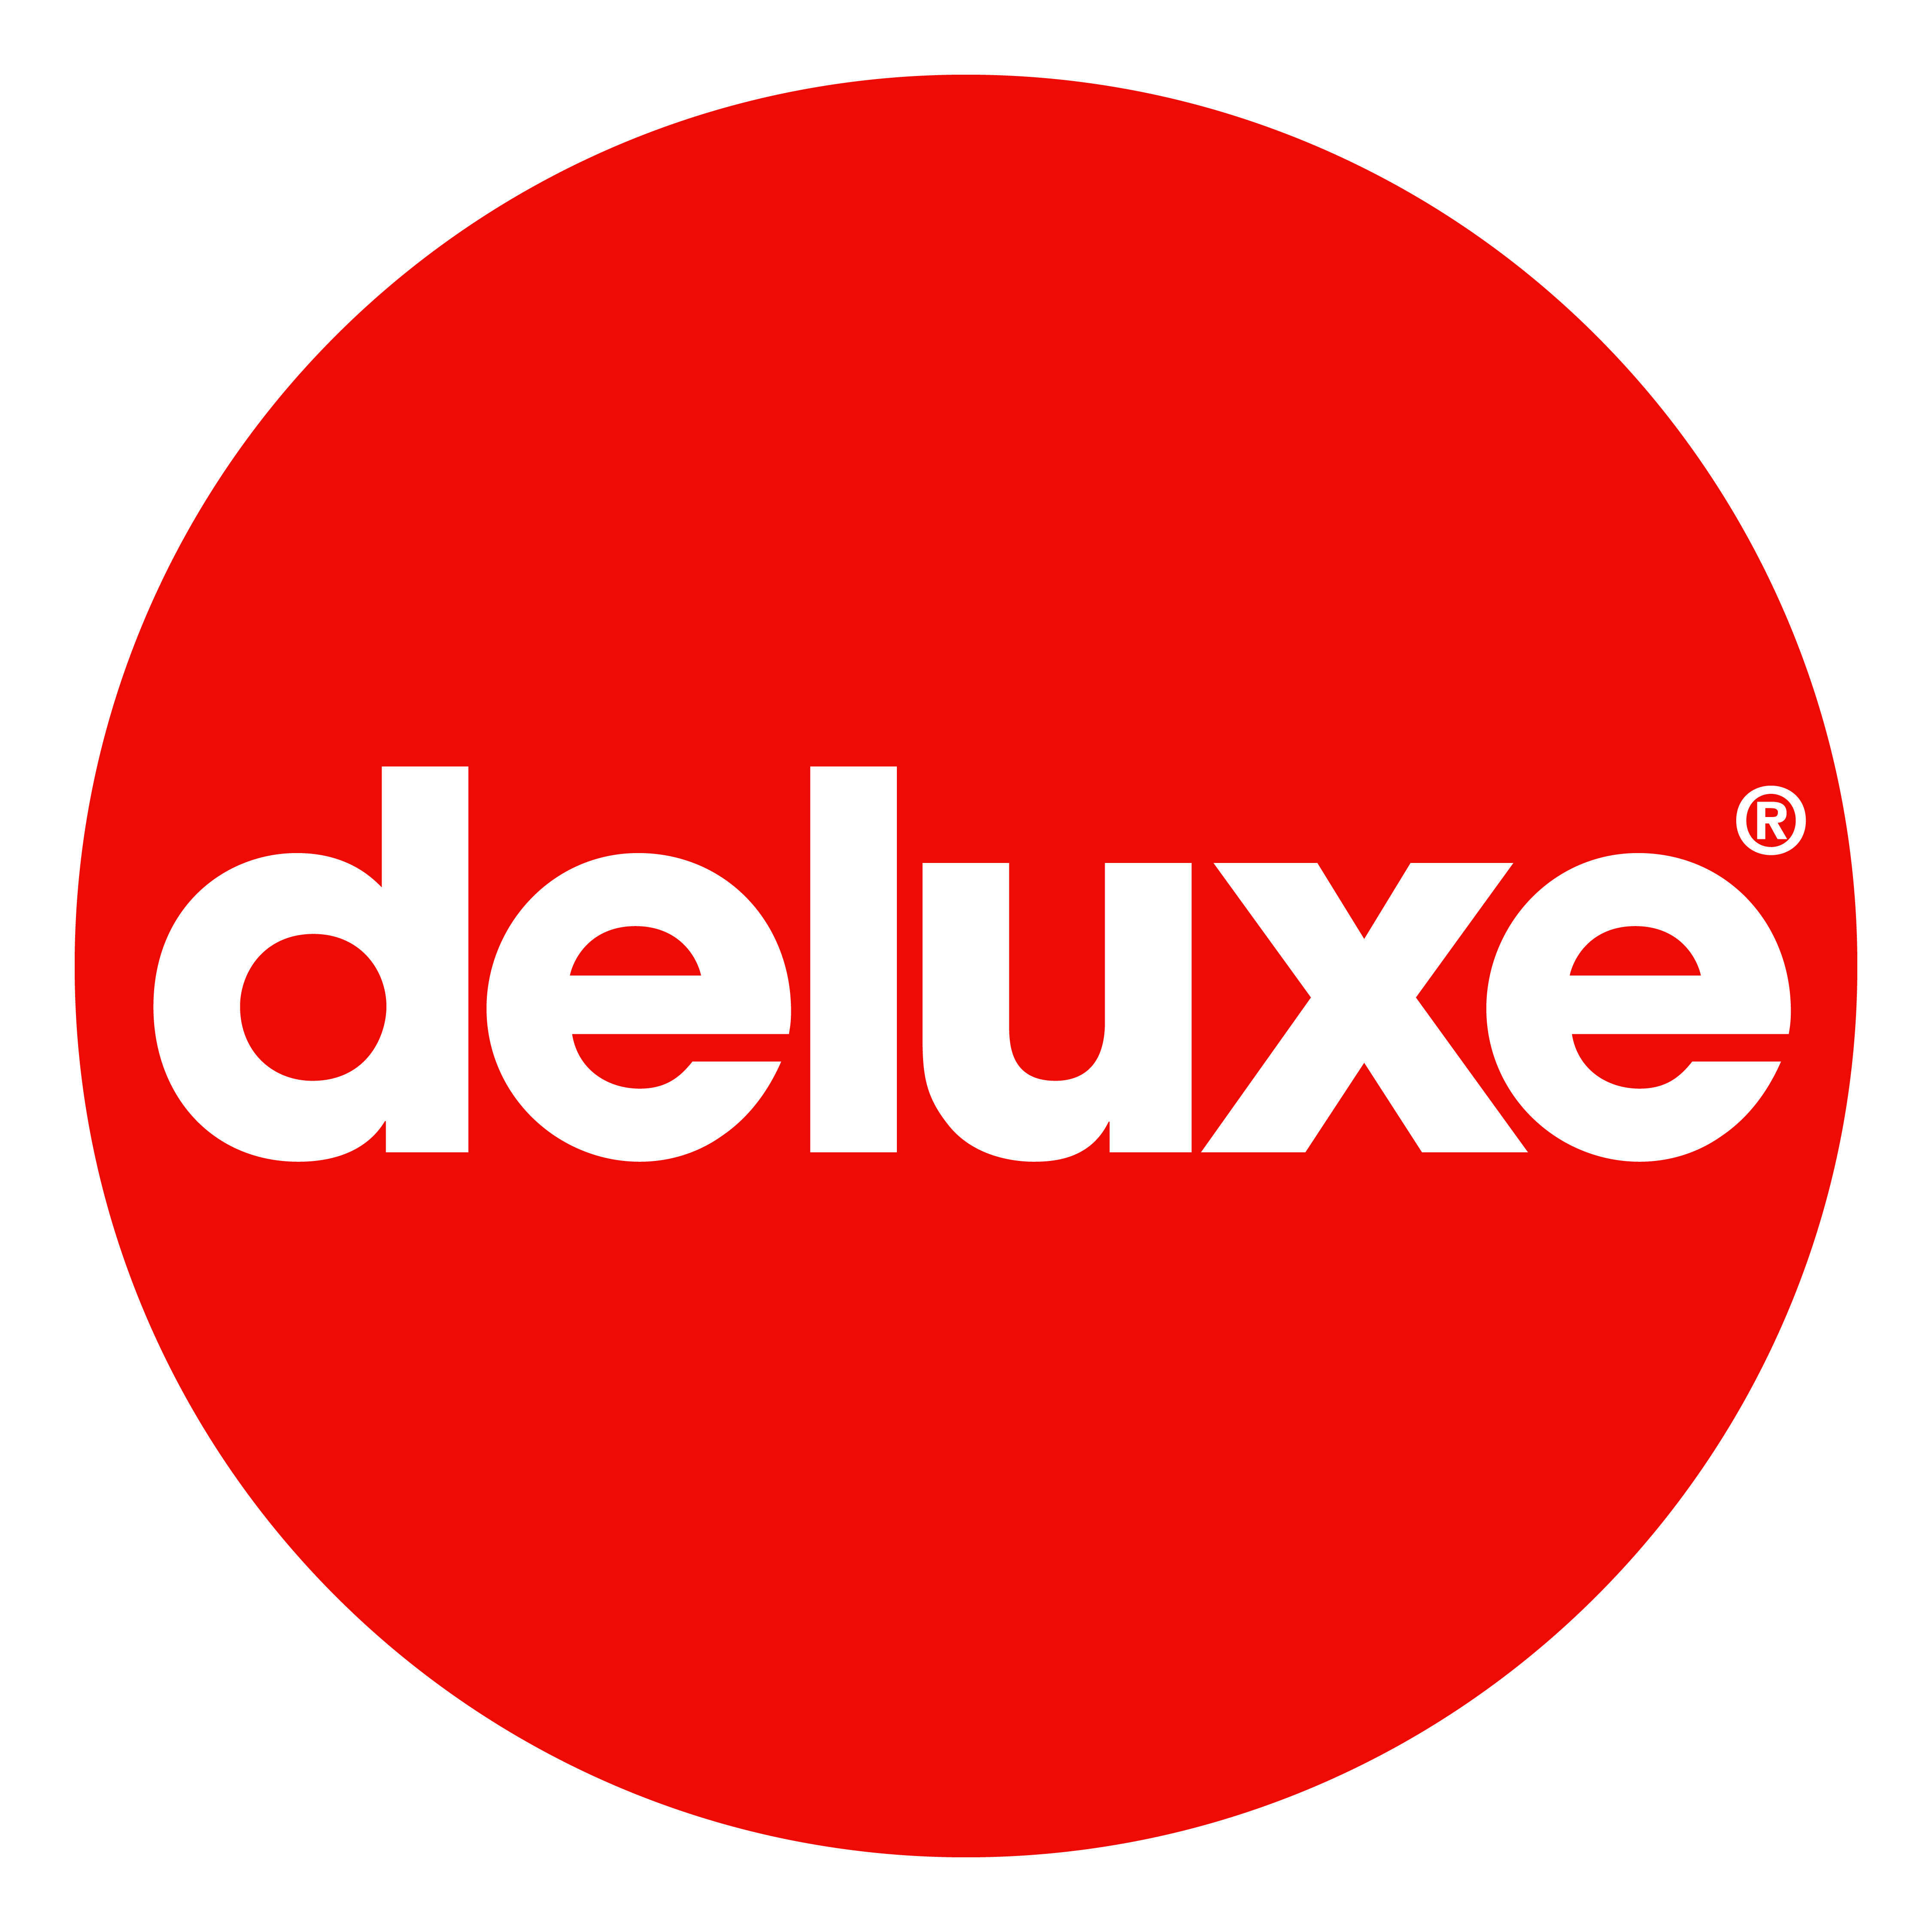 Deluxe Logos